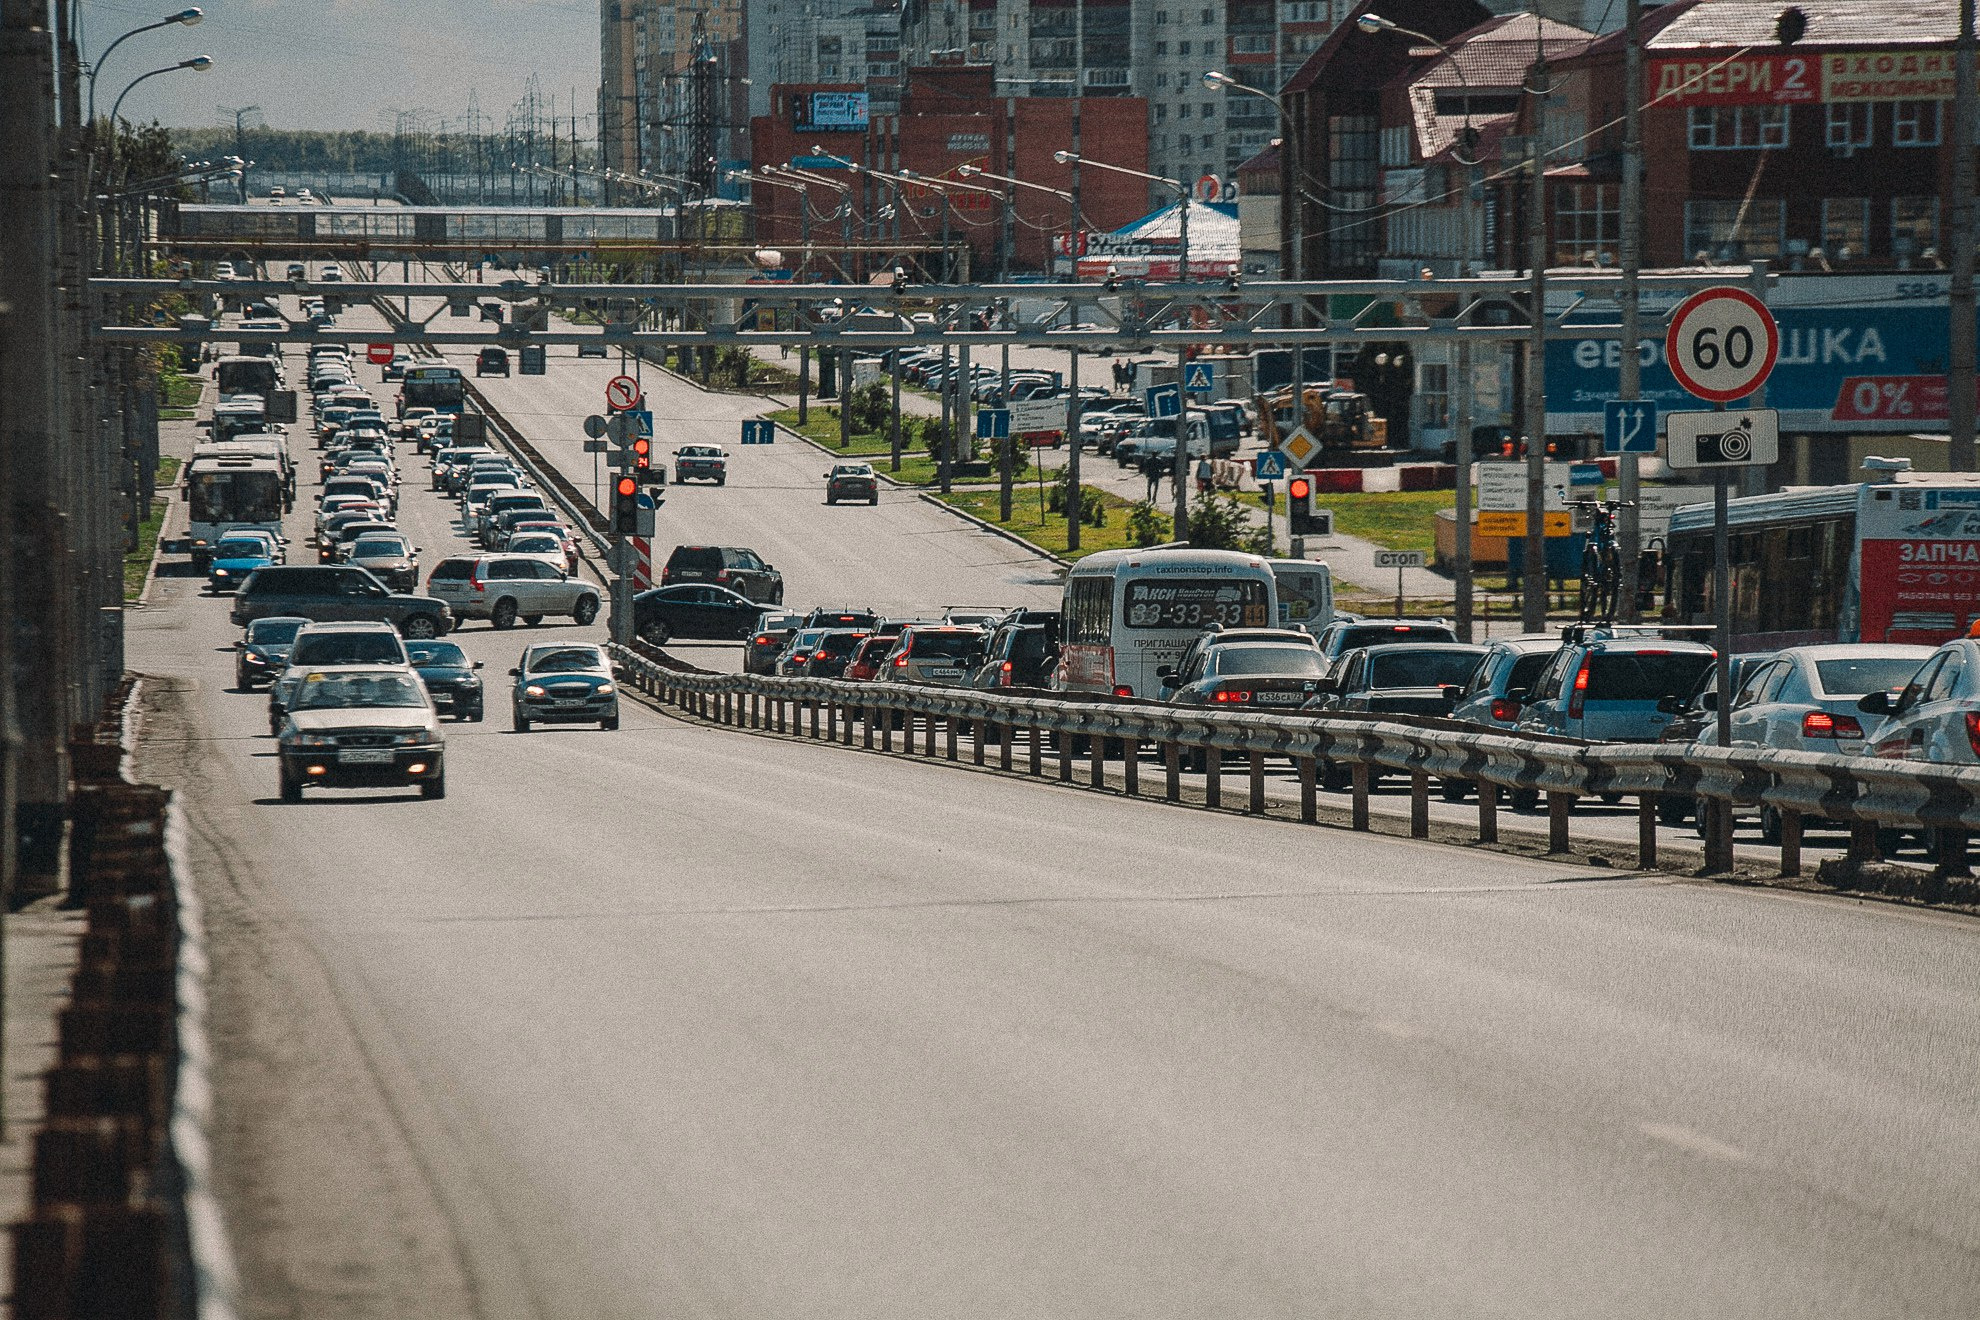 Трасса через город — это шум, грязь, ухудшение городской среды и здоровья населения